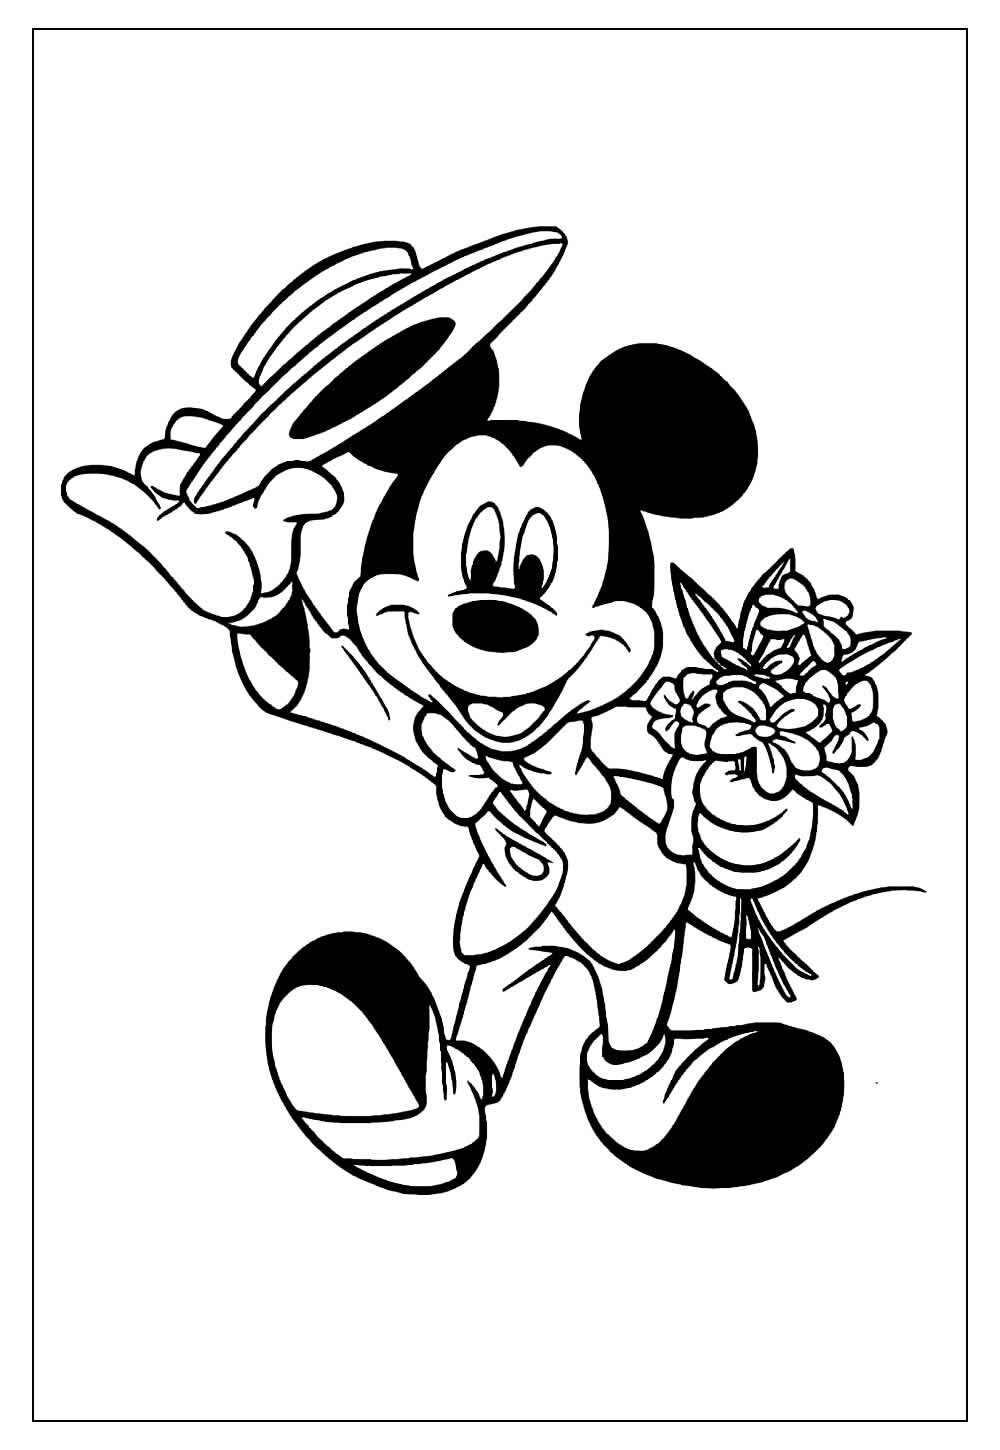 Desenho do Mickey Mouse para pintar